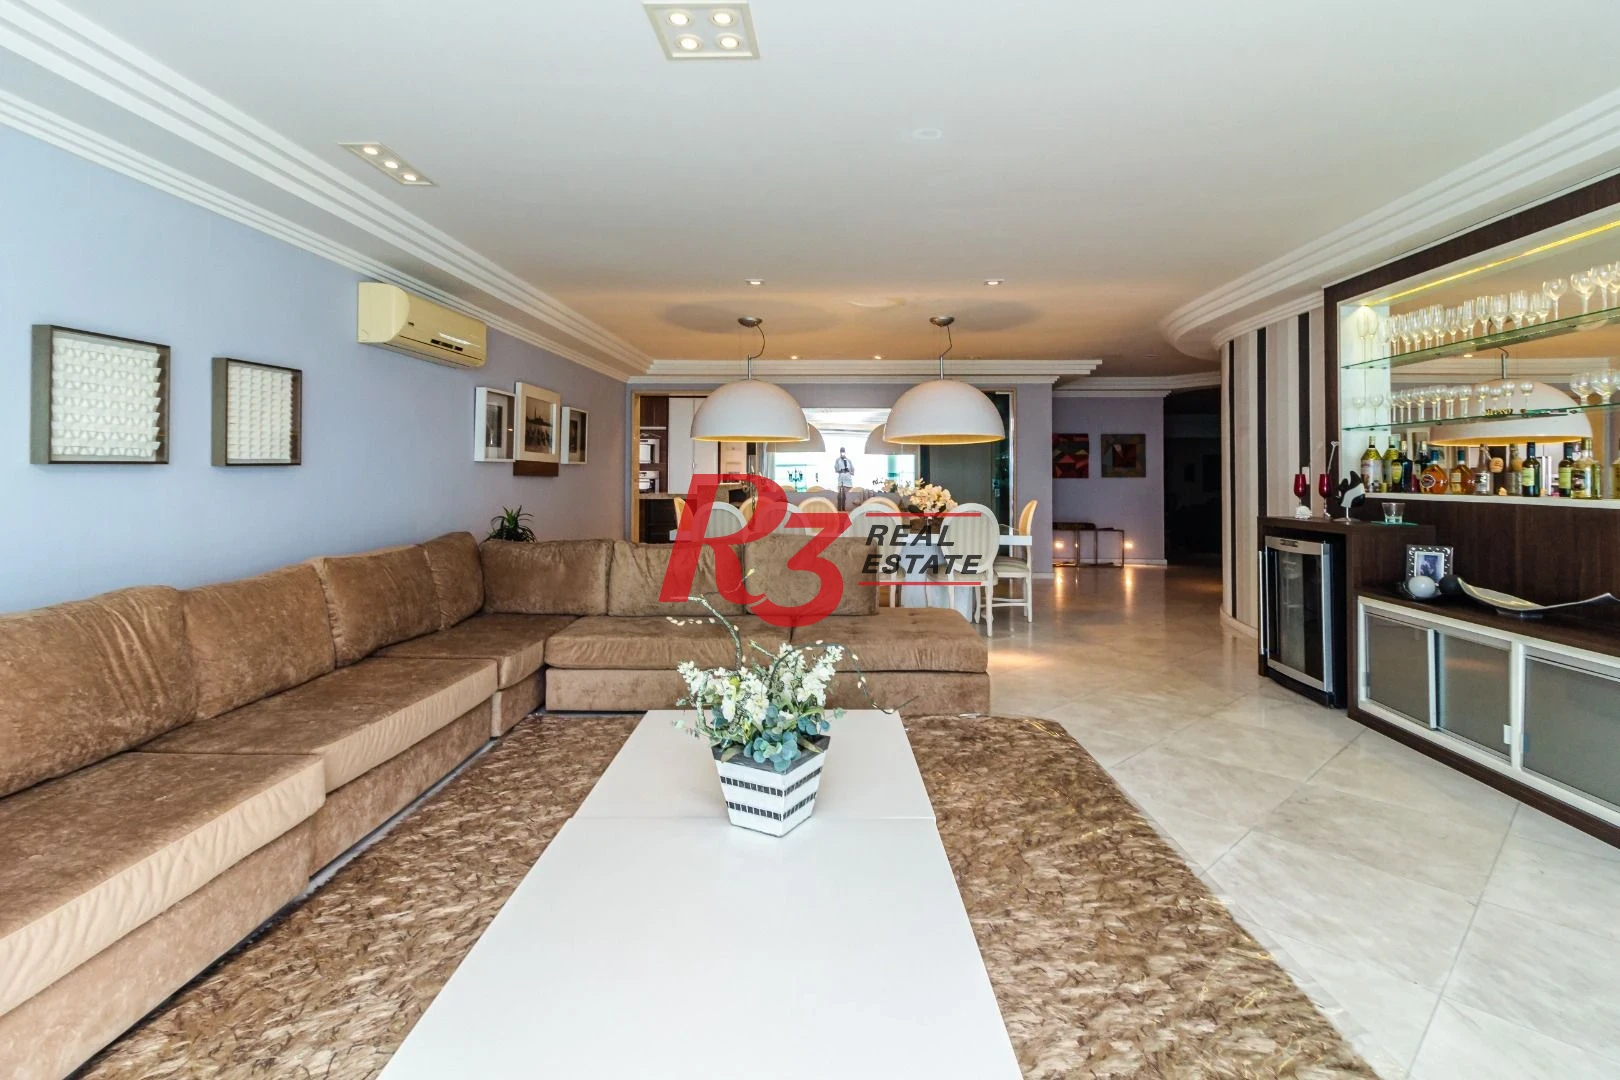 Cobertura com 4 dormitórios à venda, 440 m² por R$ 3.800.000,00 - Vila Guilhermina - Praia Grande/SP